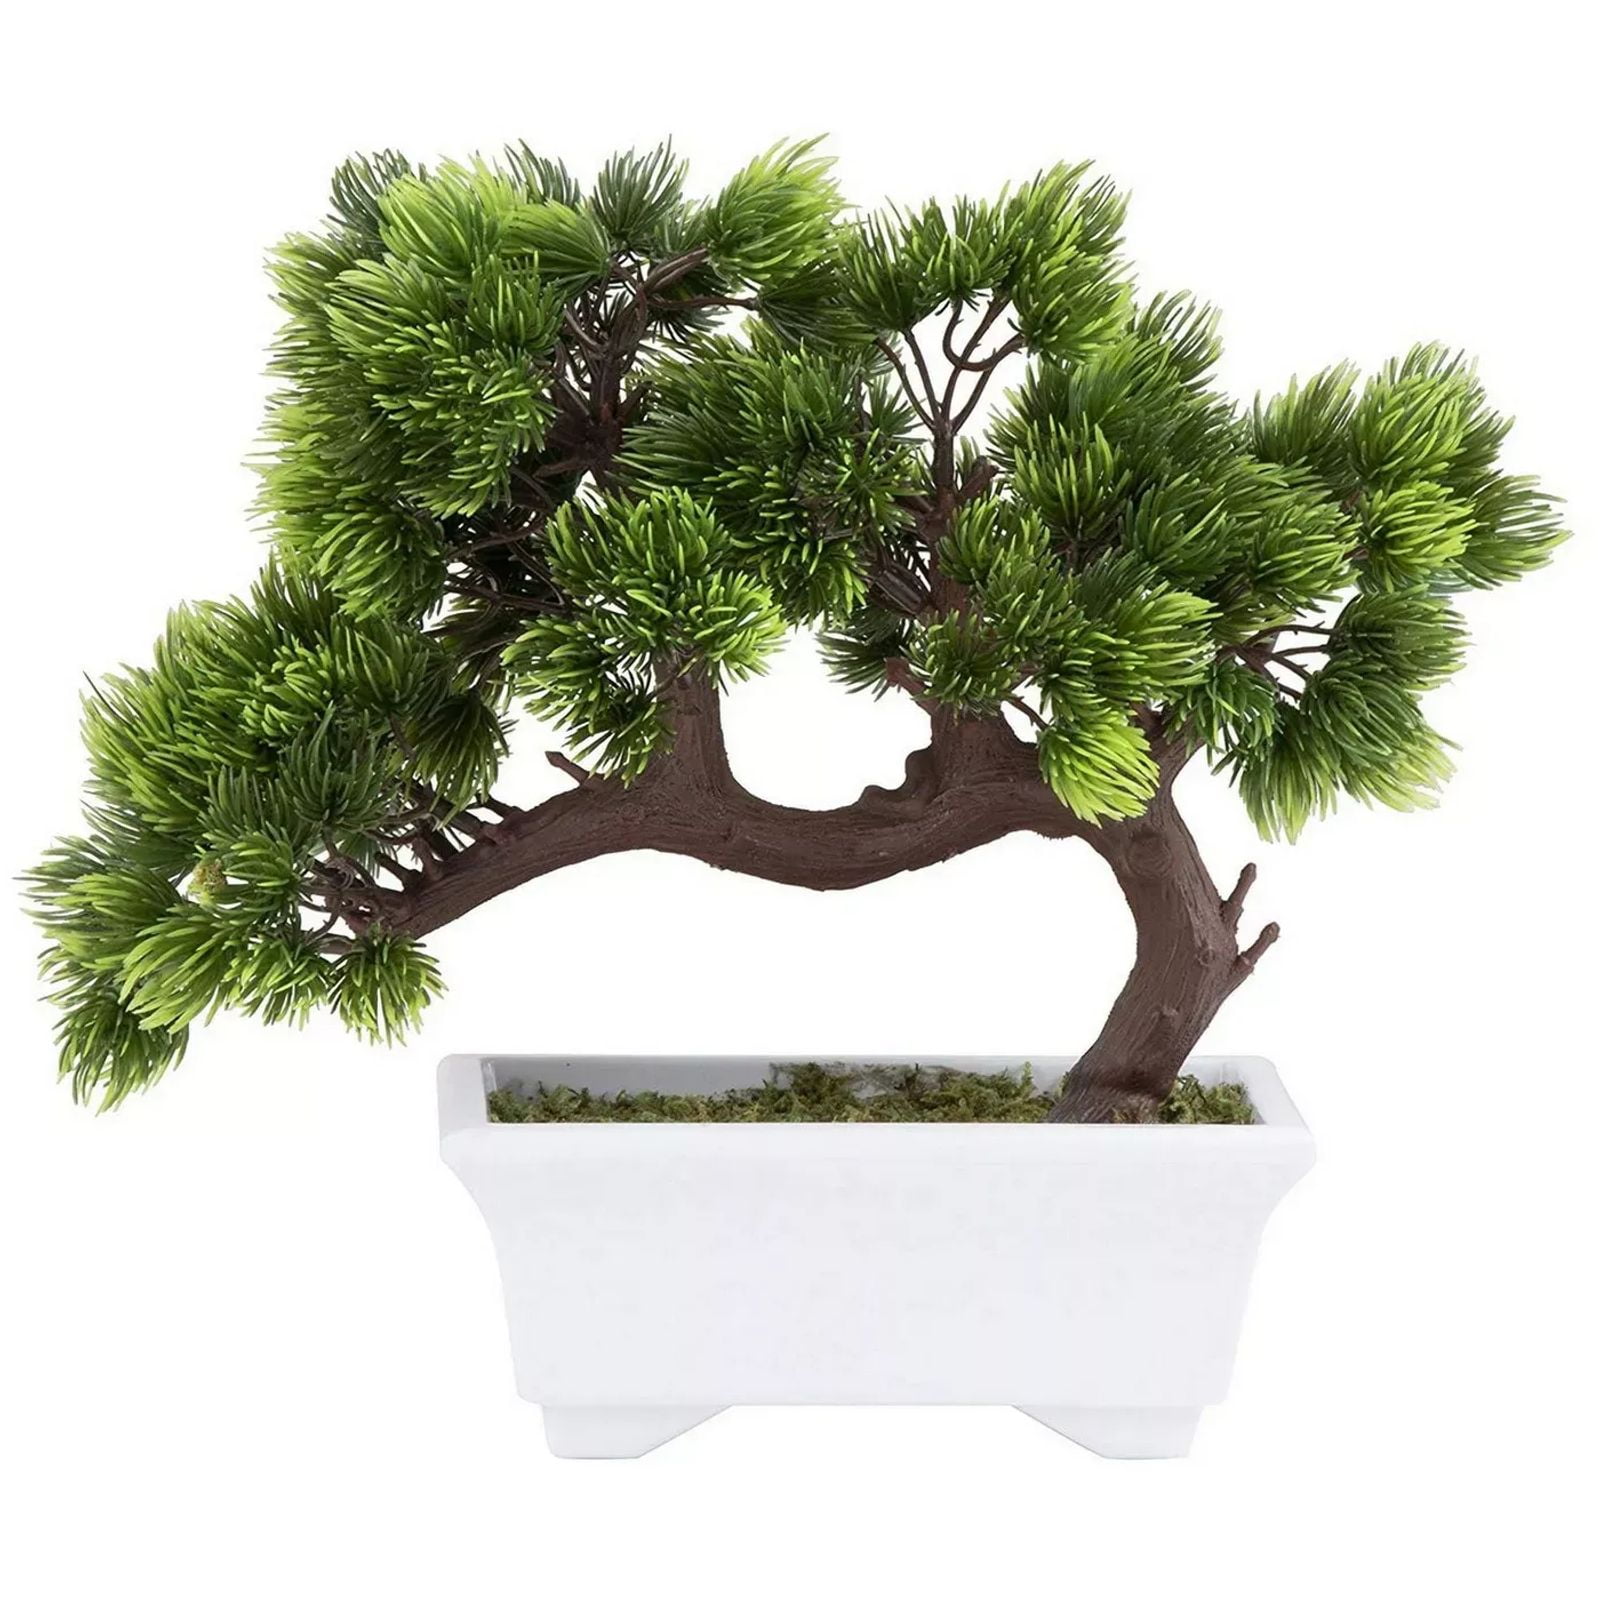 BL_ Artificial Plant Tree Bonsai Fake Potted Ornament Home Garden Decor Gift DI 